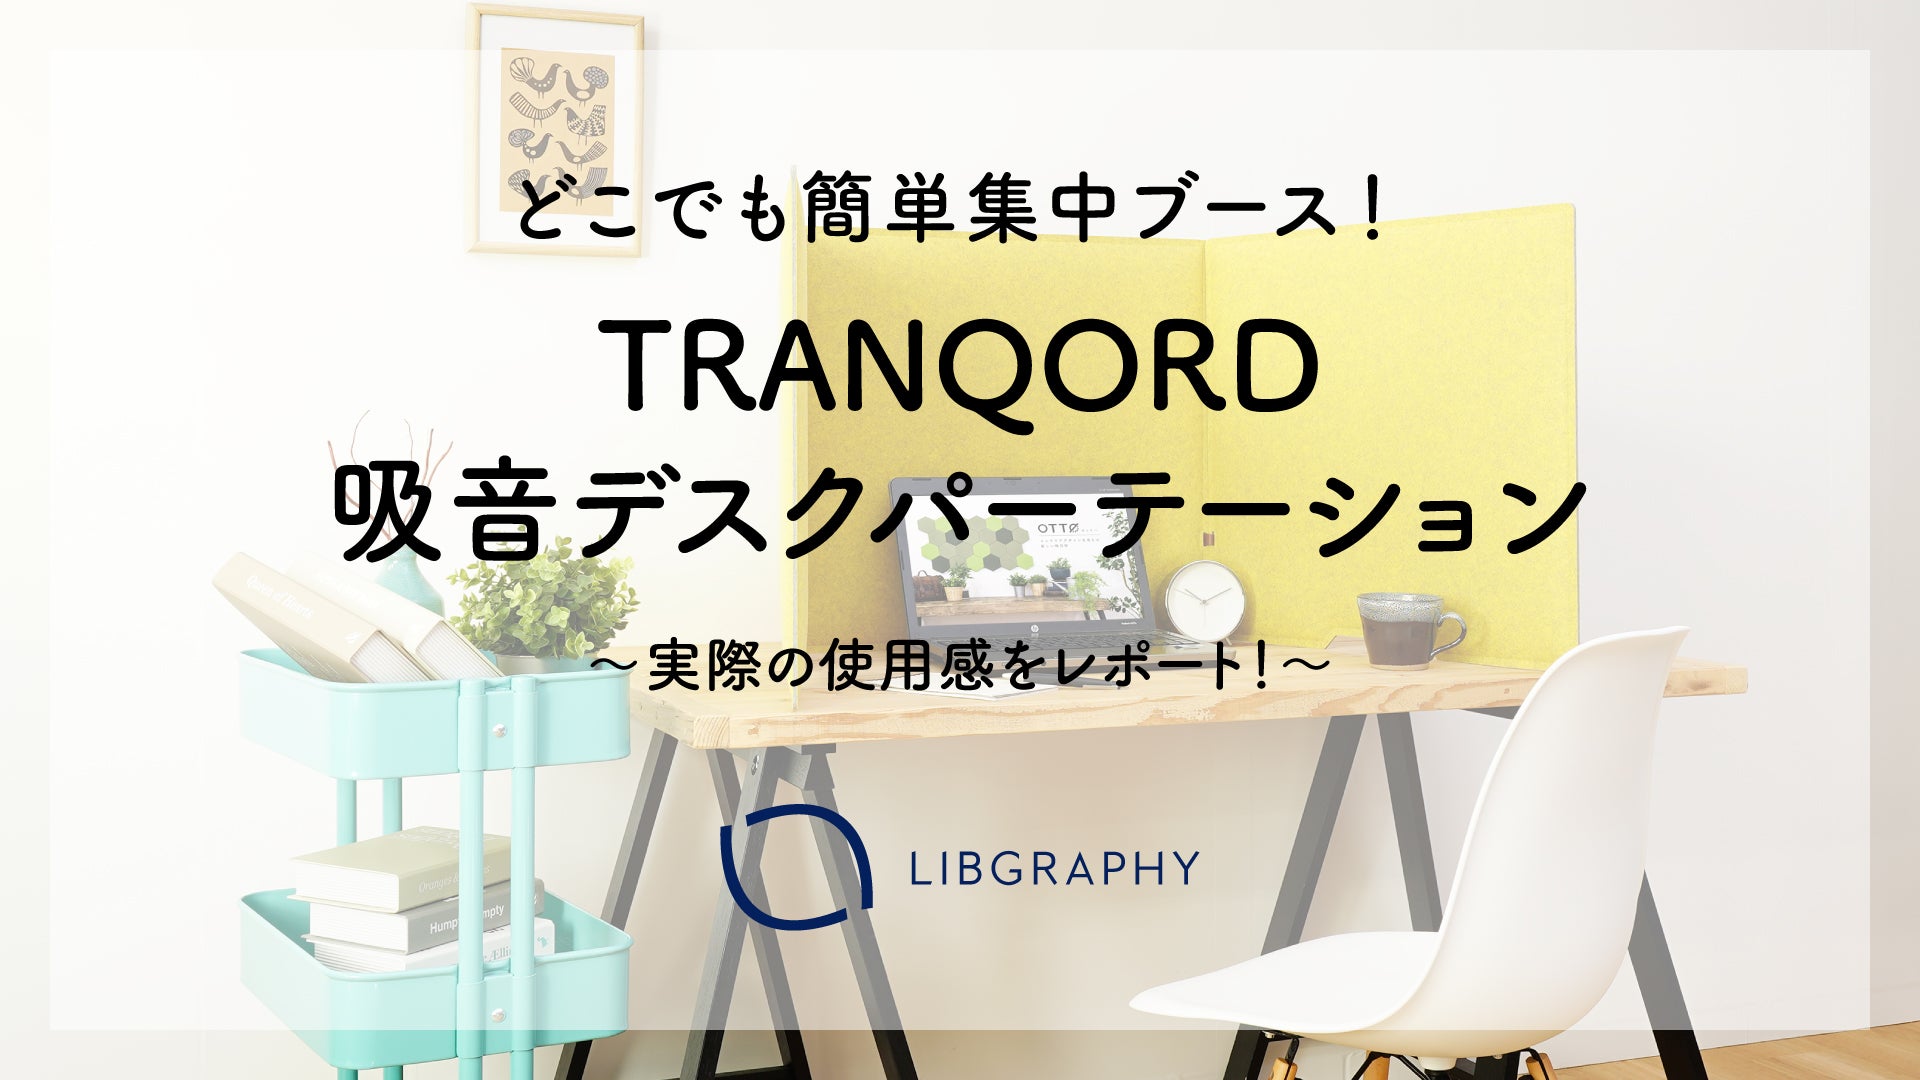 TRANQORD 吸音デスクパーテーション – リブグラフィ